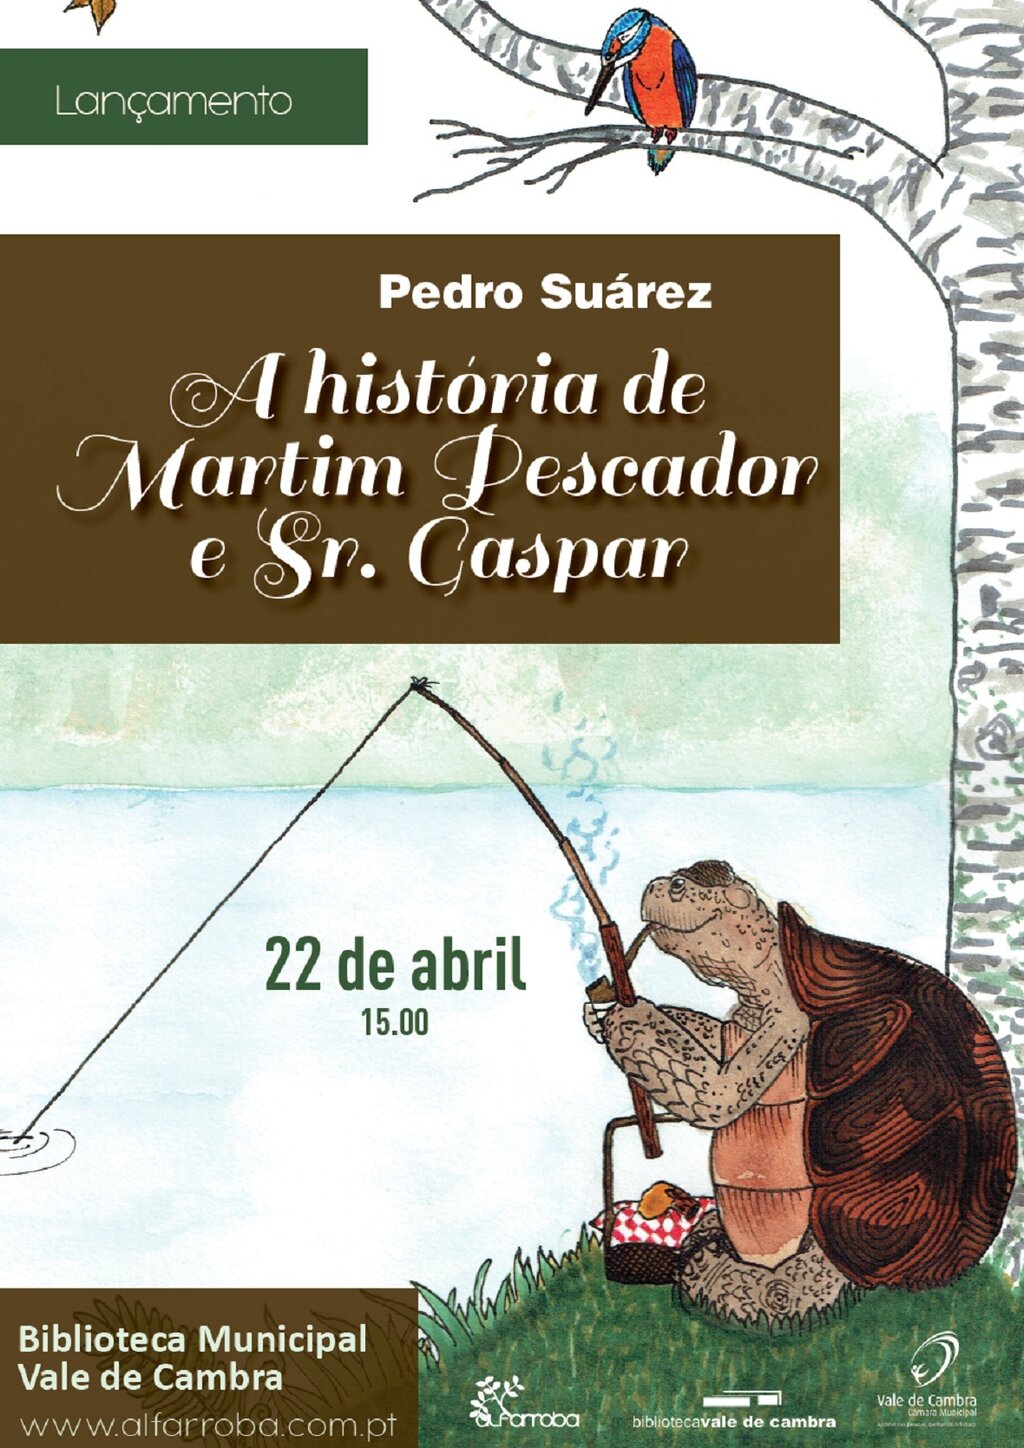 Lançamento do livro de Pedro Suárez “A História de Martim Pescador e Sr. Gaspar”